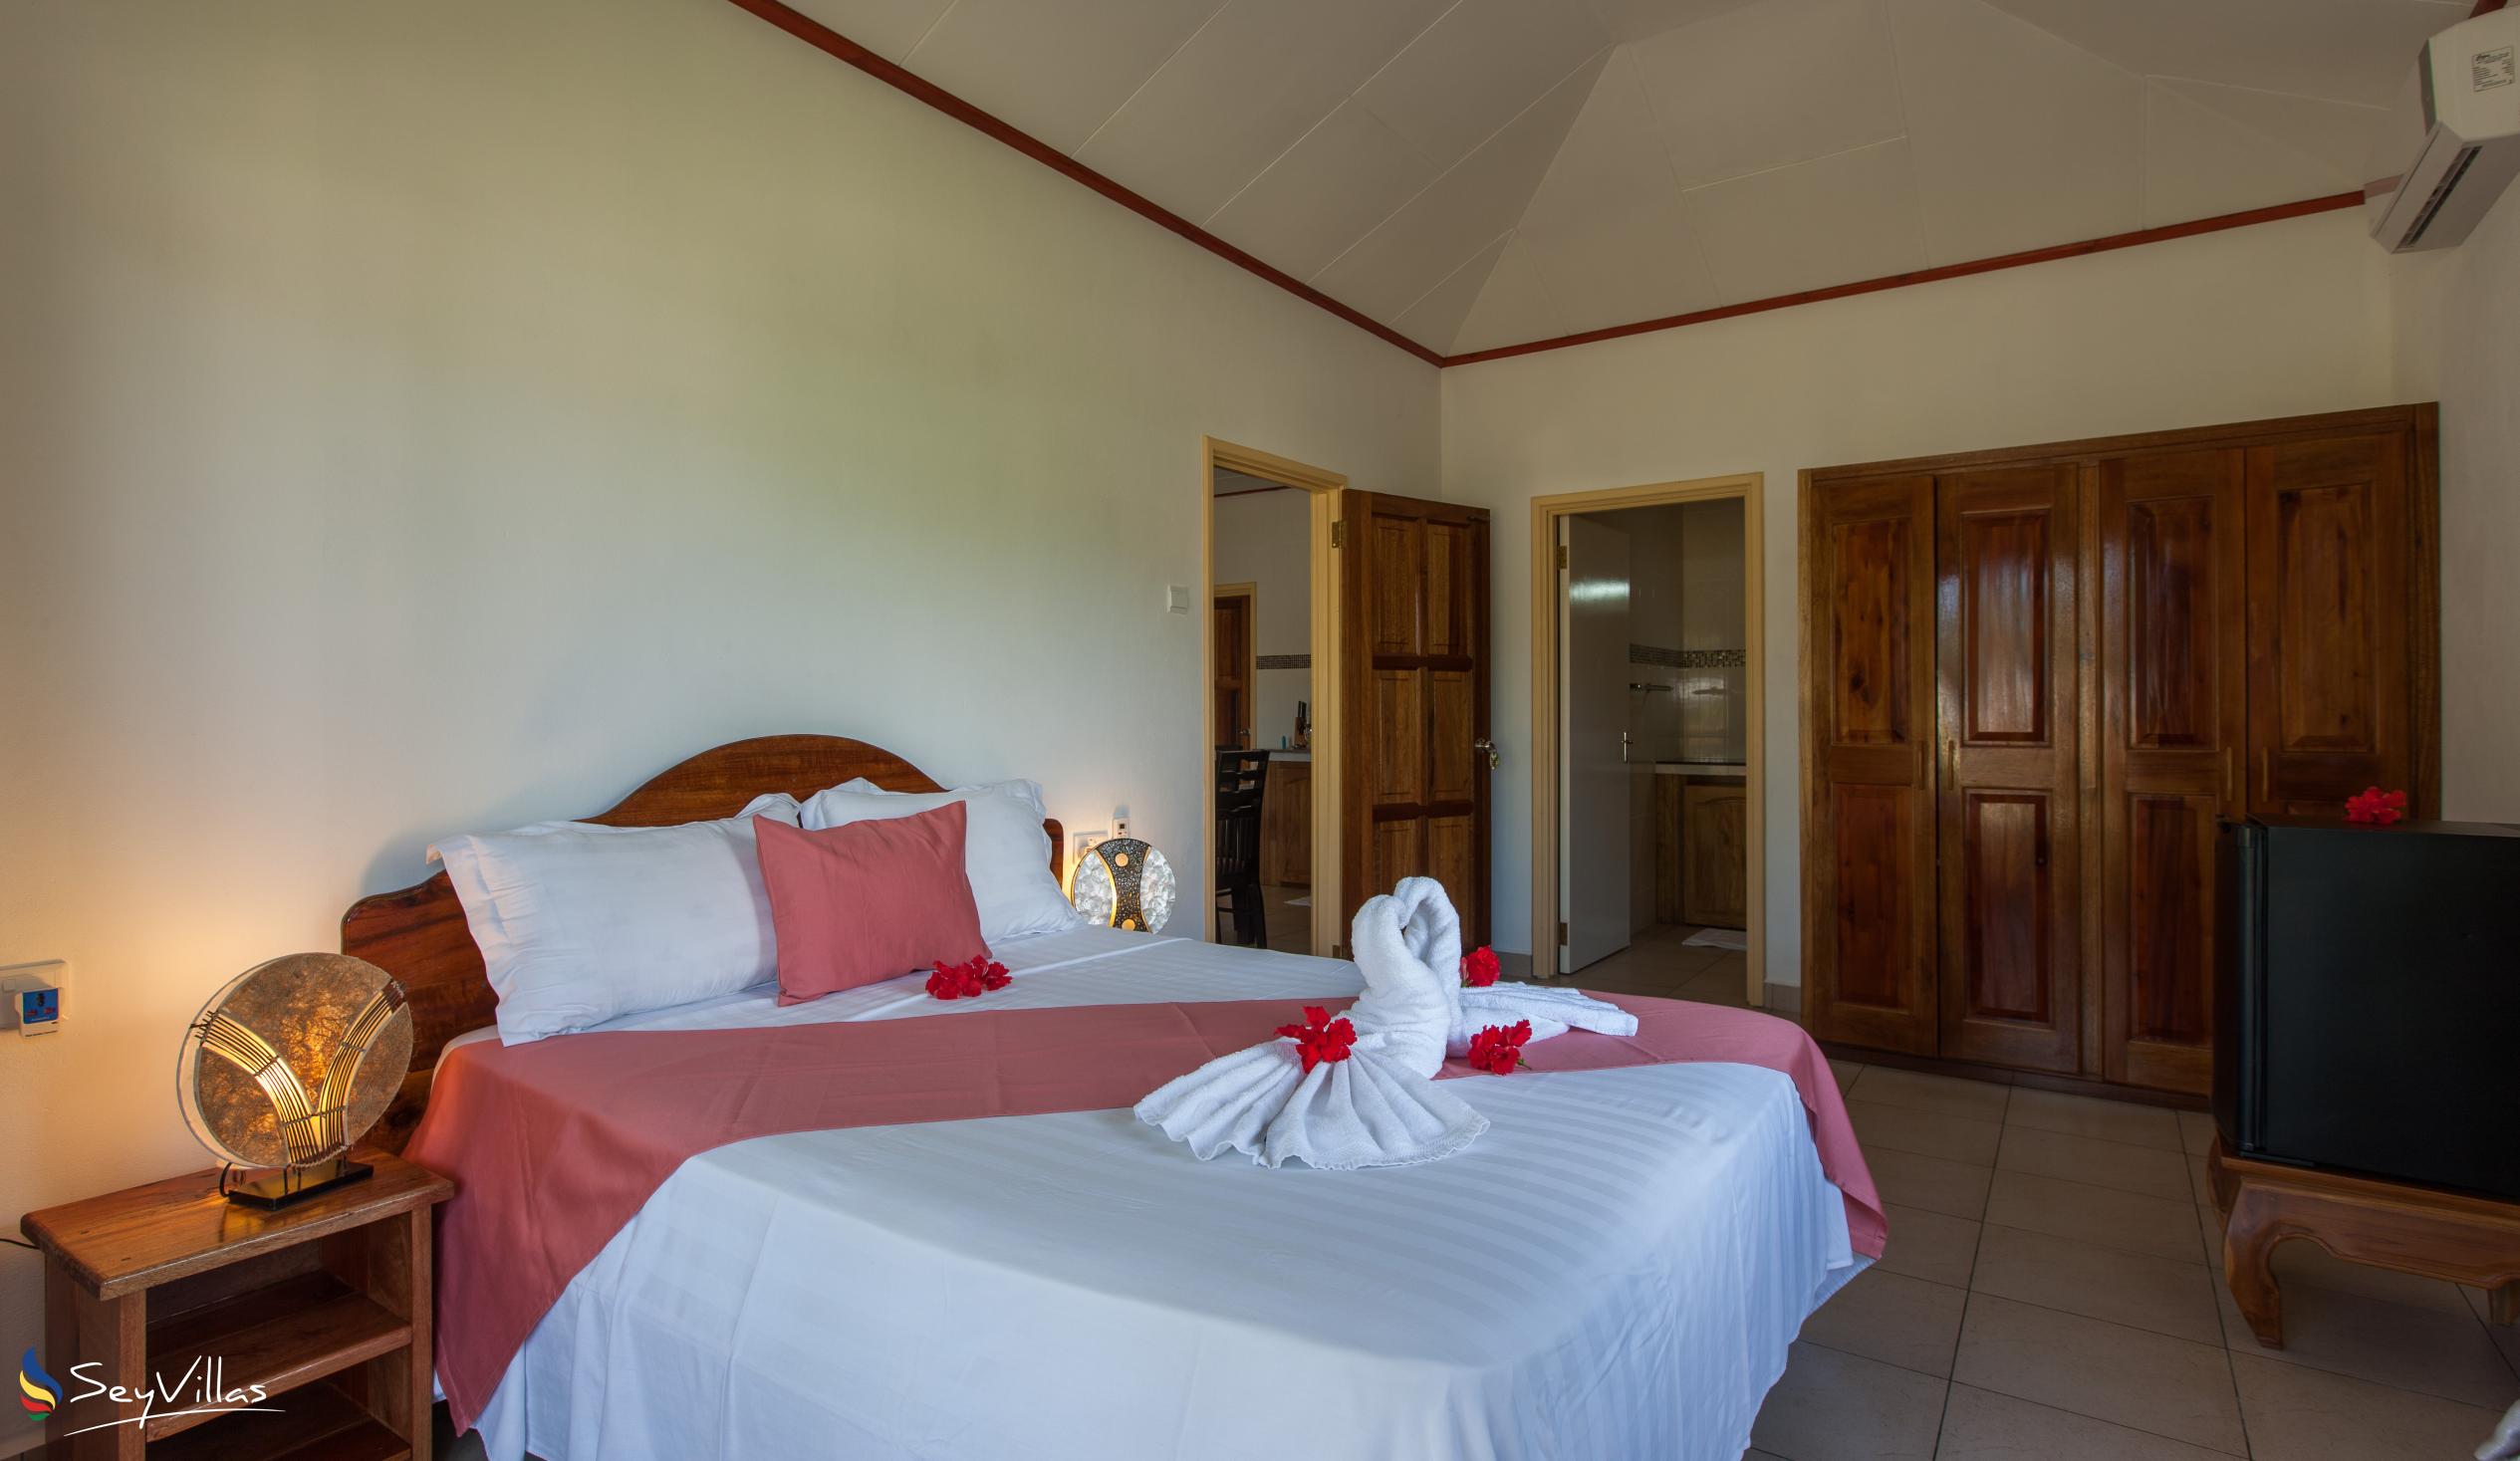 Foto 61: Hostellerie La Digue - Chalet 2 chambres - La Digue (Seychelles)